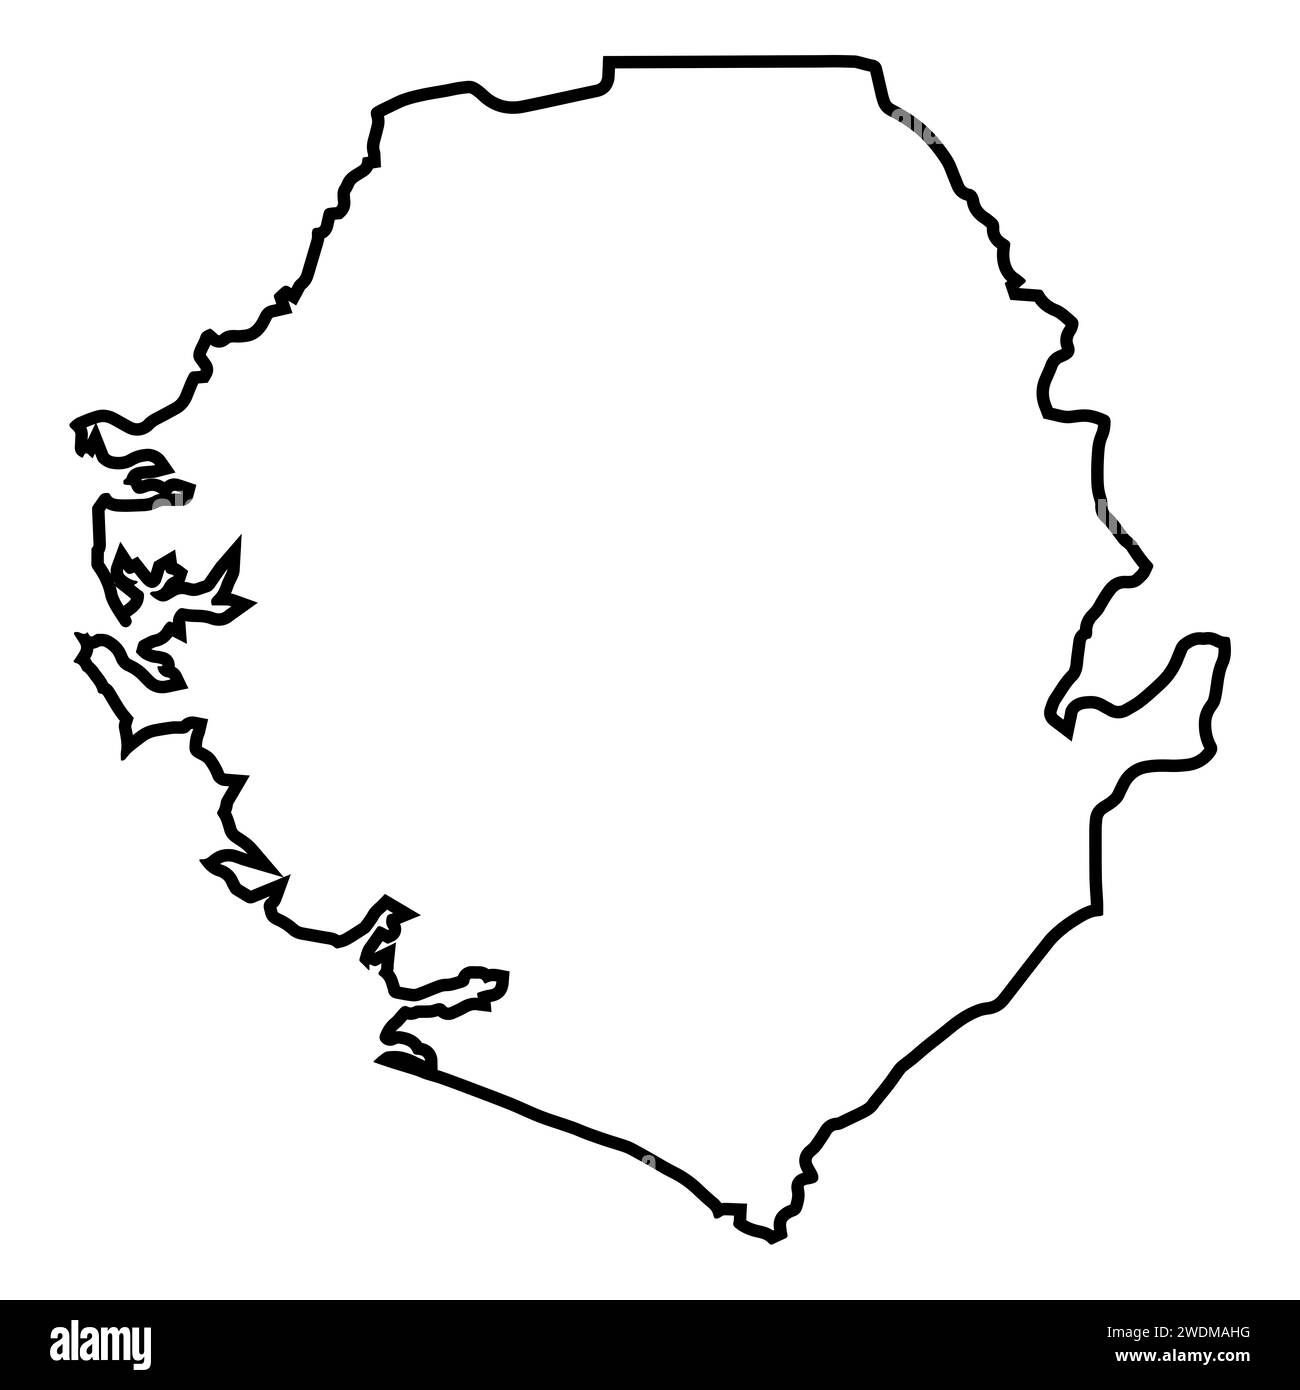 Schwarze Umrisskarte des afrikanischen Landes Sierra Leone auf weißem Hintergrund Stockfoto